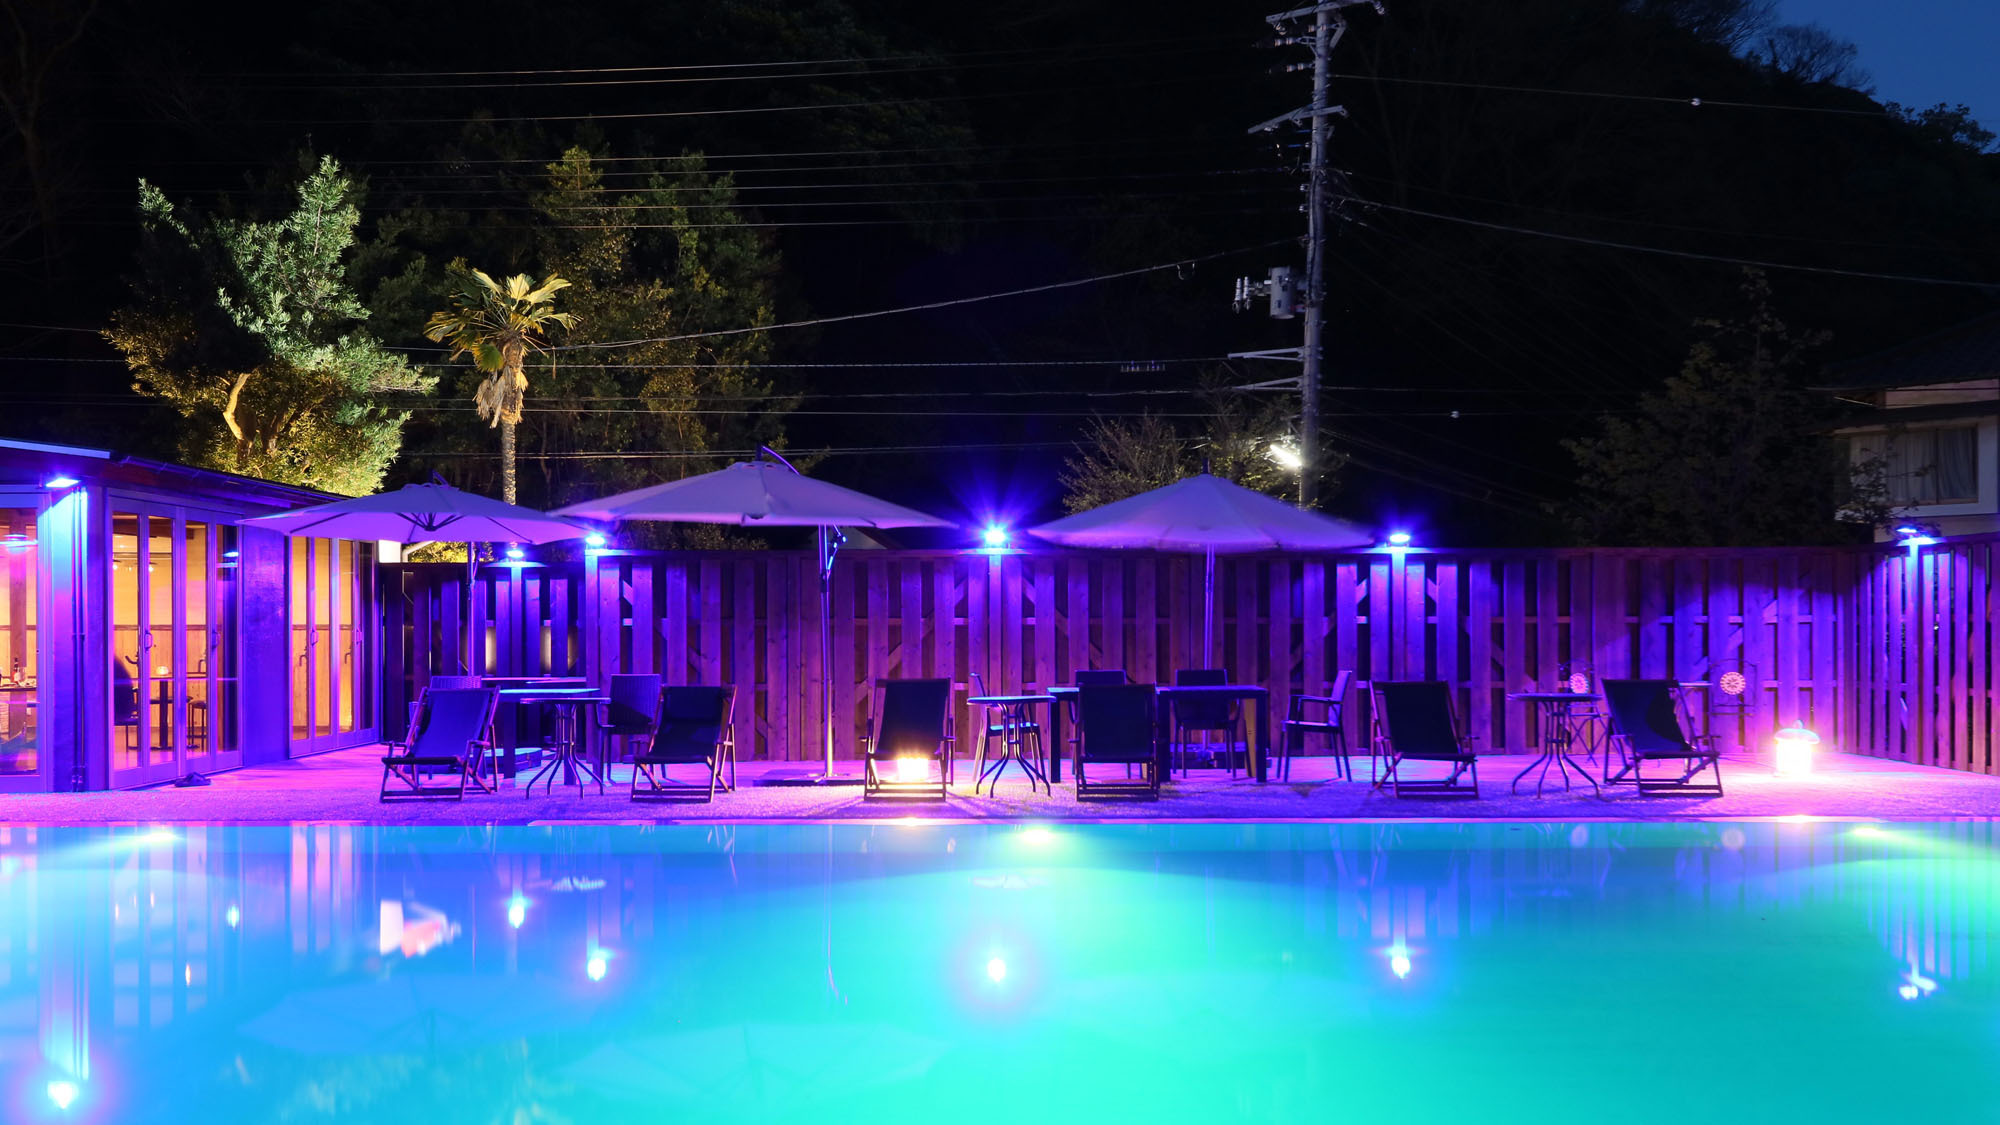 ナイトプール -Night pool-星空を眺めながら、夜の温泉プールでひと泳ぎなんていかがですか